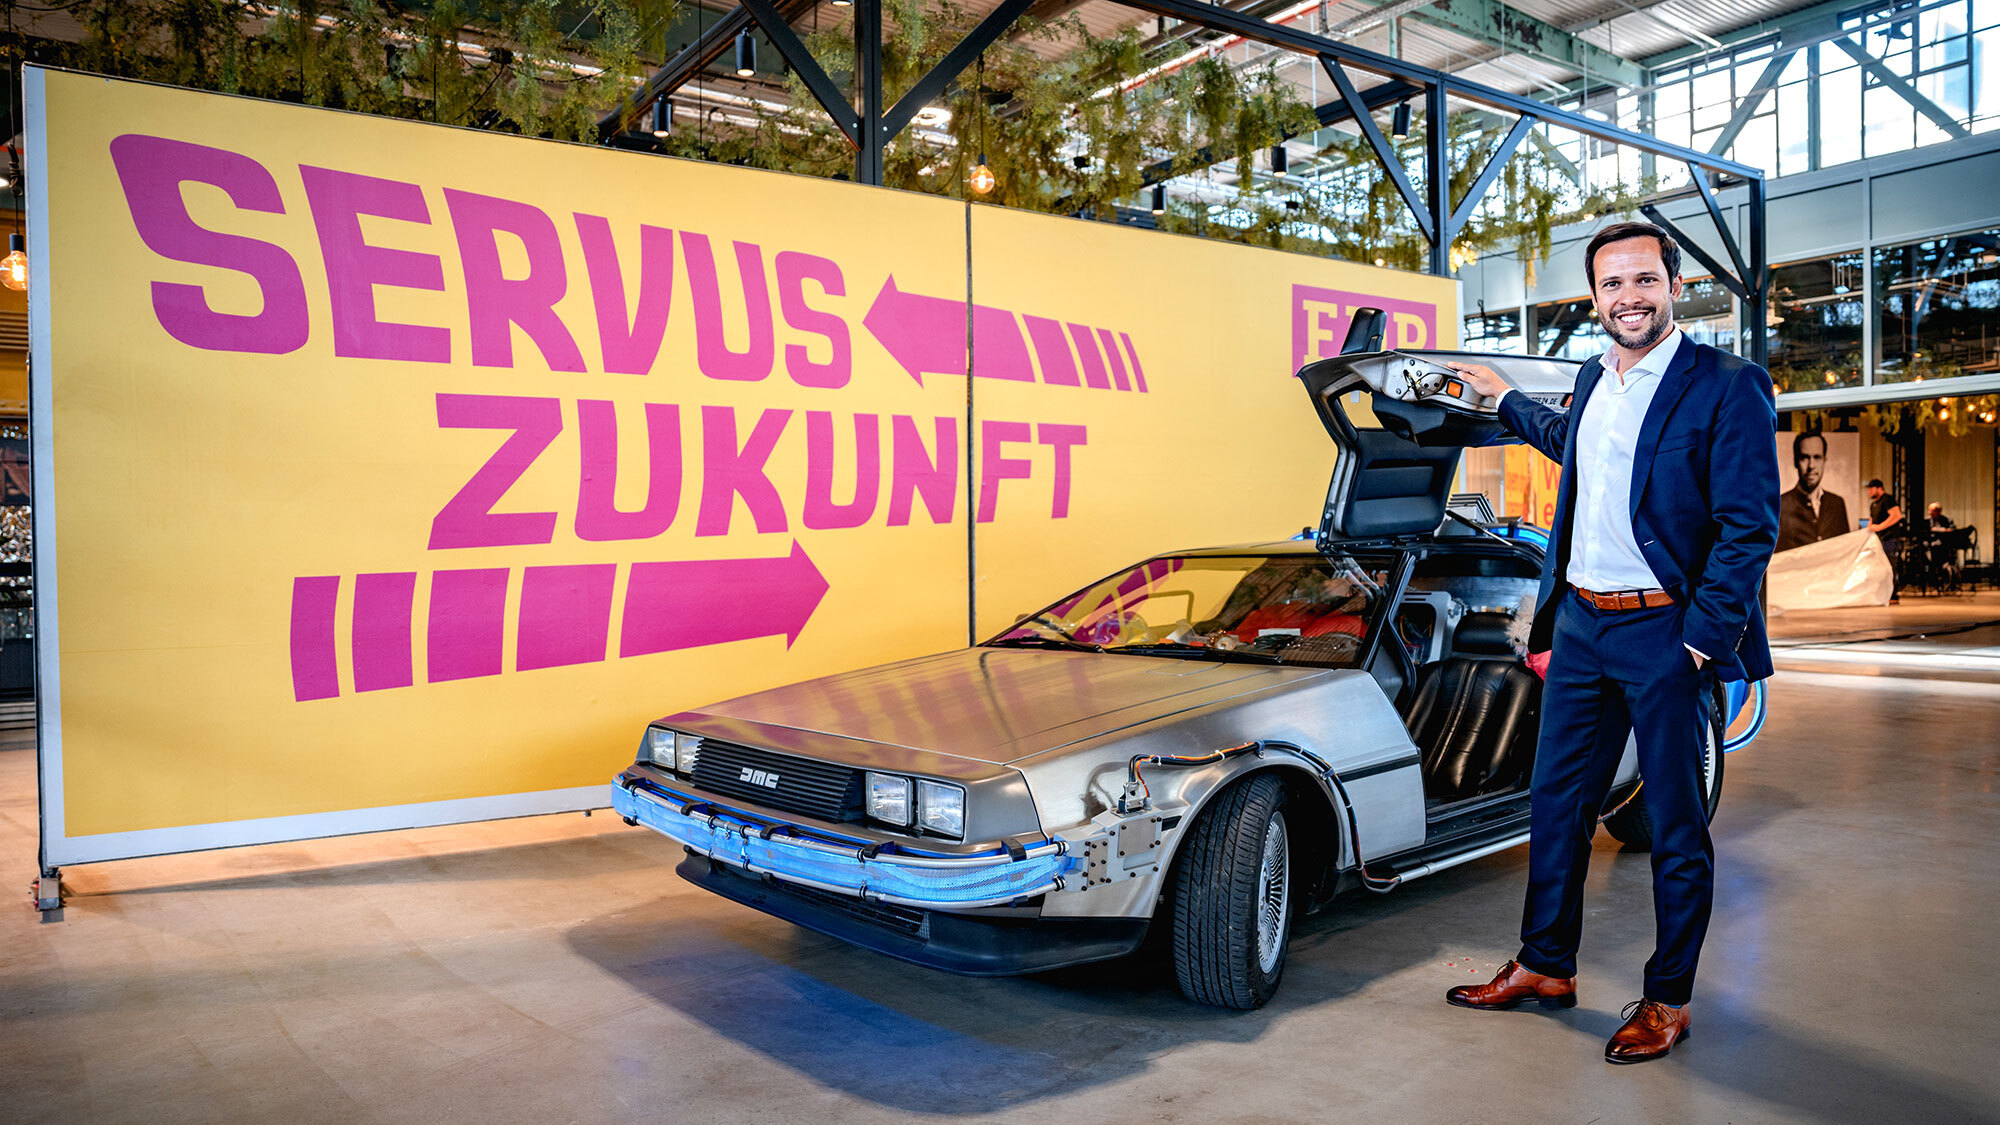 Spitzenkandidat der FDP Bayern, Martin Hagen, steht vor einem DeLorean DMC-12 vor einem großen Plakat, auf dem groß "Servus Zukunft" steht.